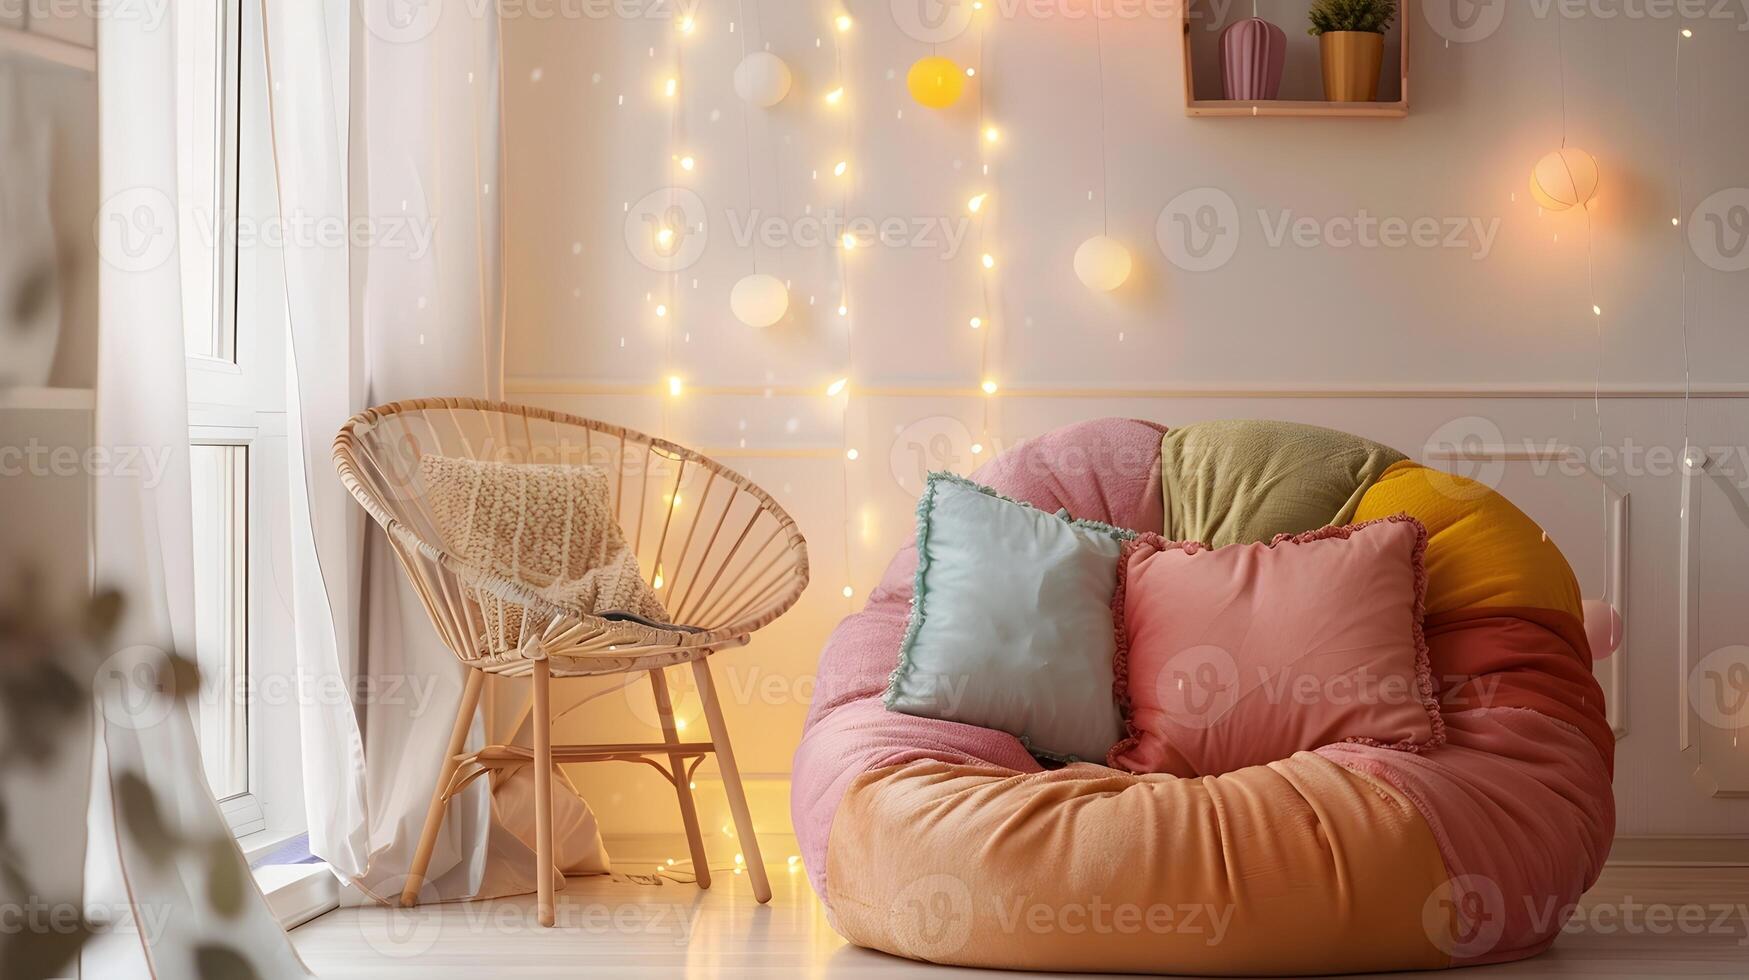 coloré rond haricot sac chaise dans pastel décoré pièce avec Fée lumières création une confortable ambiance photo